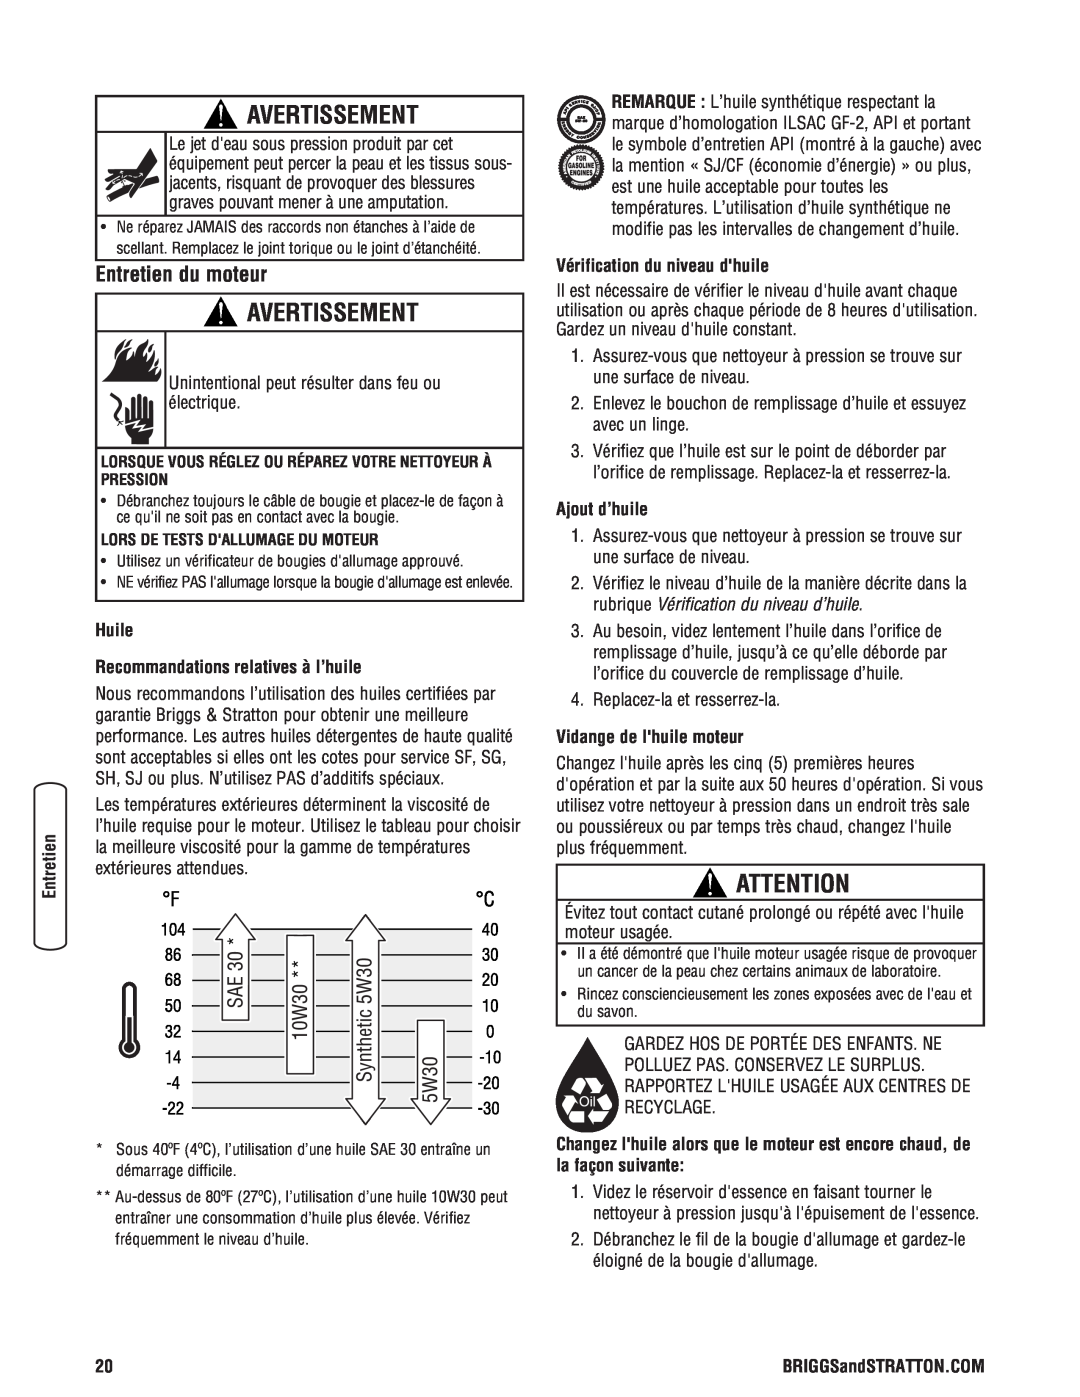 Briggs & Stratton 2900 PSI manual Avertissement, Huile Recommandations relatives à l’huile, Vérification du niveau dhuile 